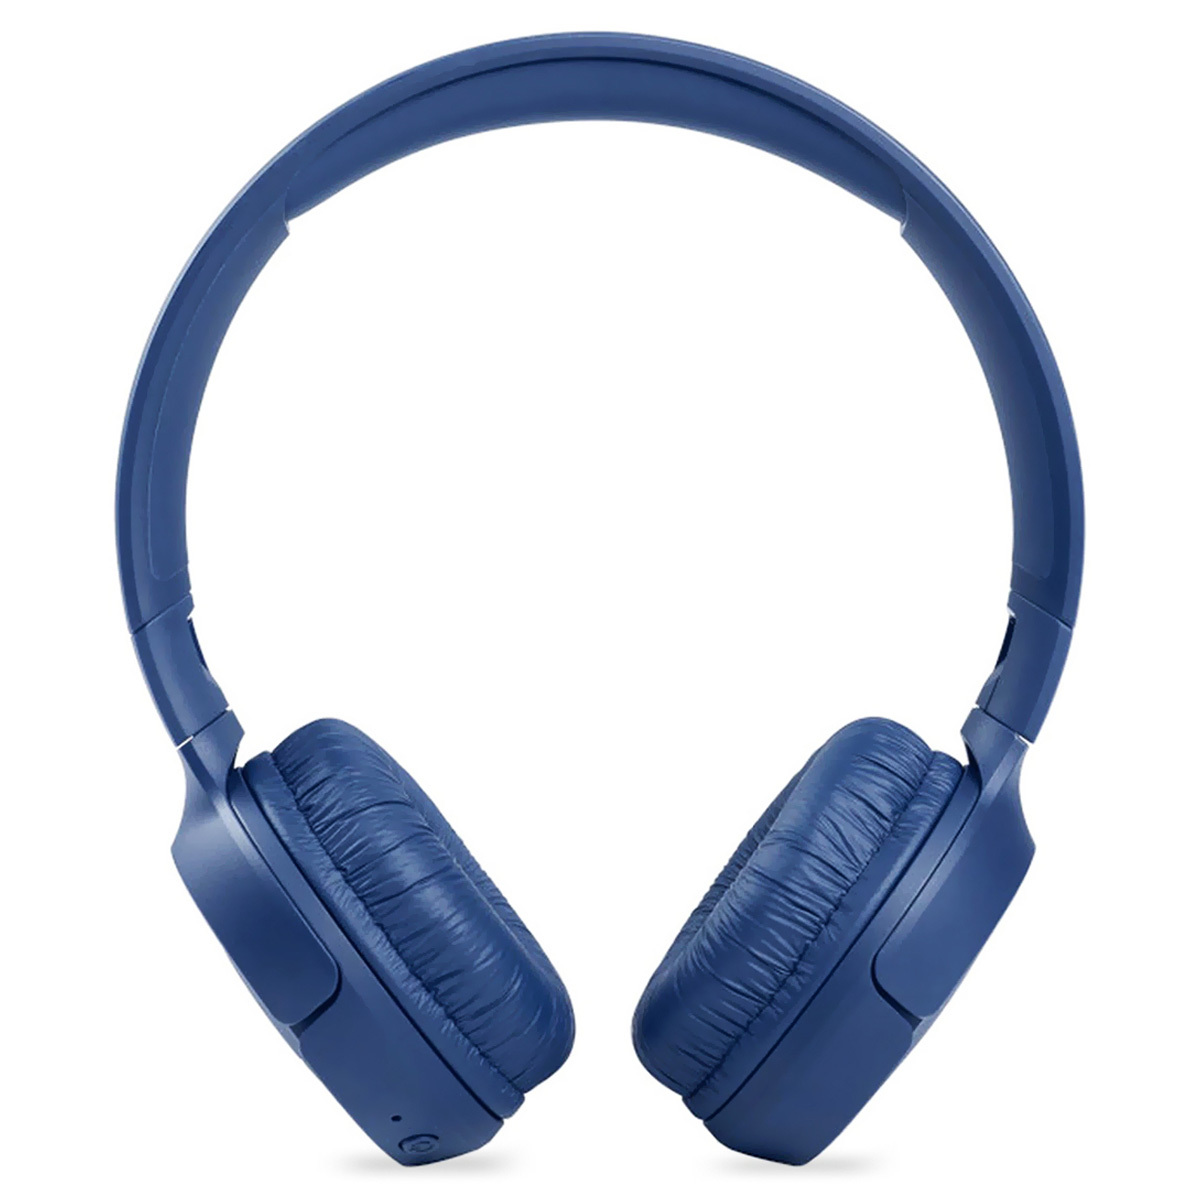  JBL Paquete de auriculares Bluetooth inalámbricos Tune 510BT  con funda gSport (azul) : Electrónica